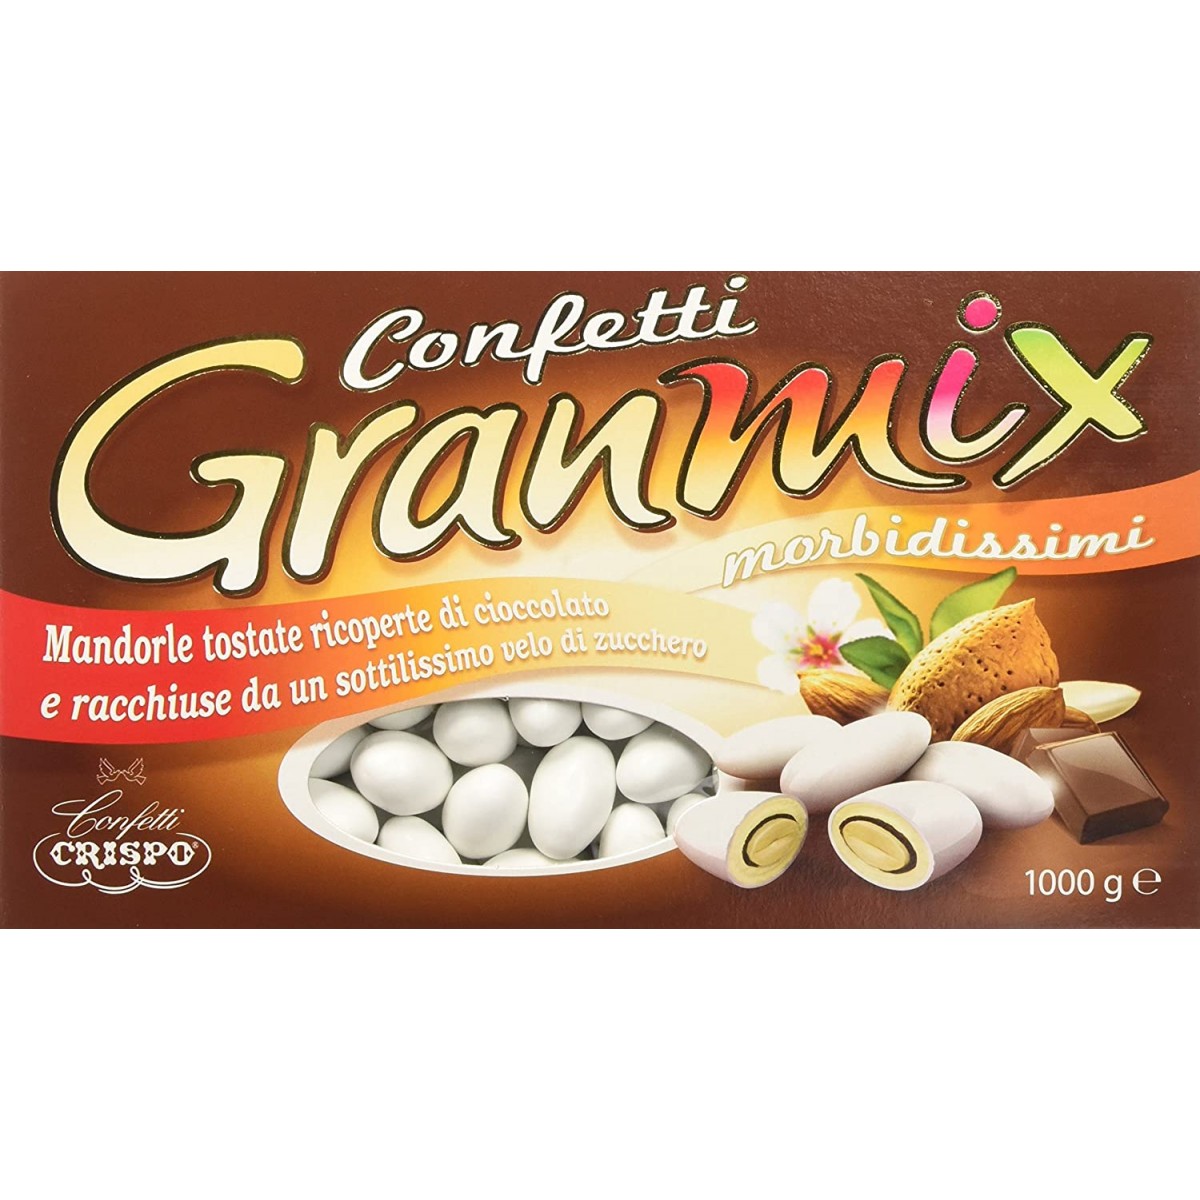 Confetti Snob Granmix Crispo, 3 confezioni da 1 kg